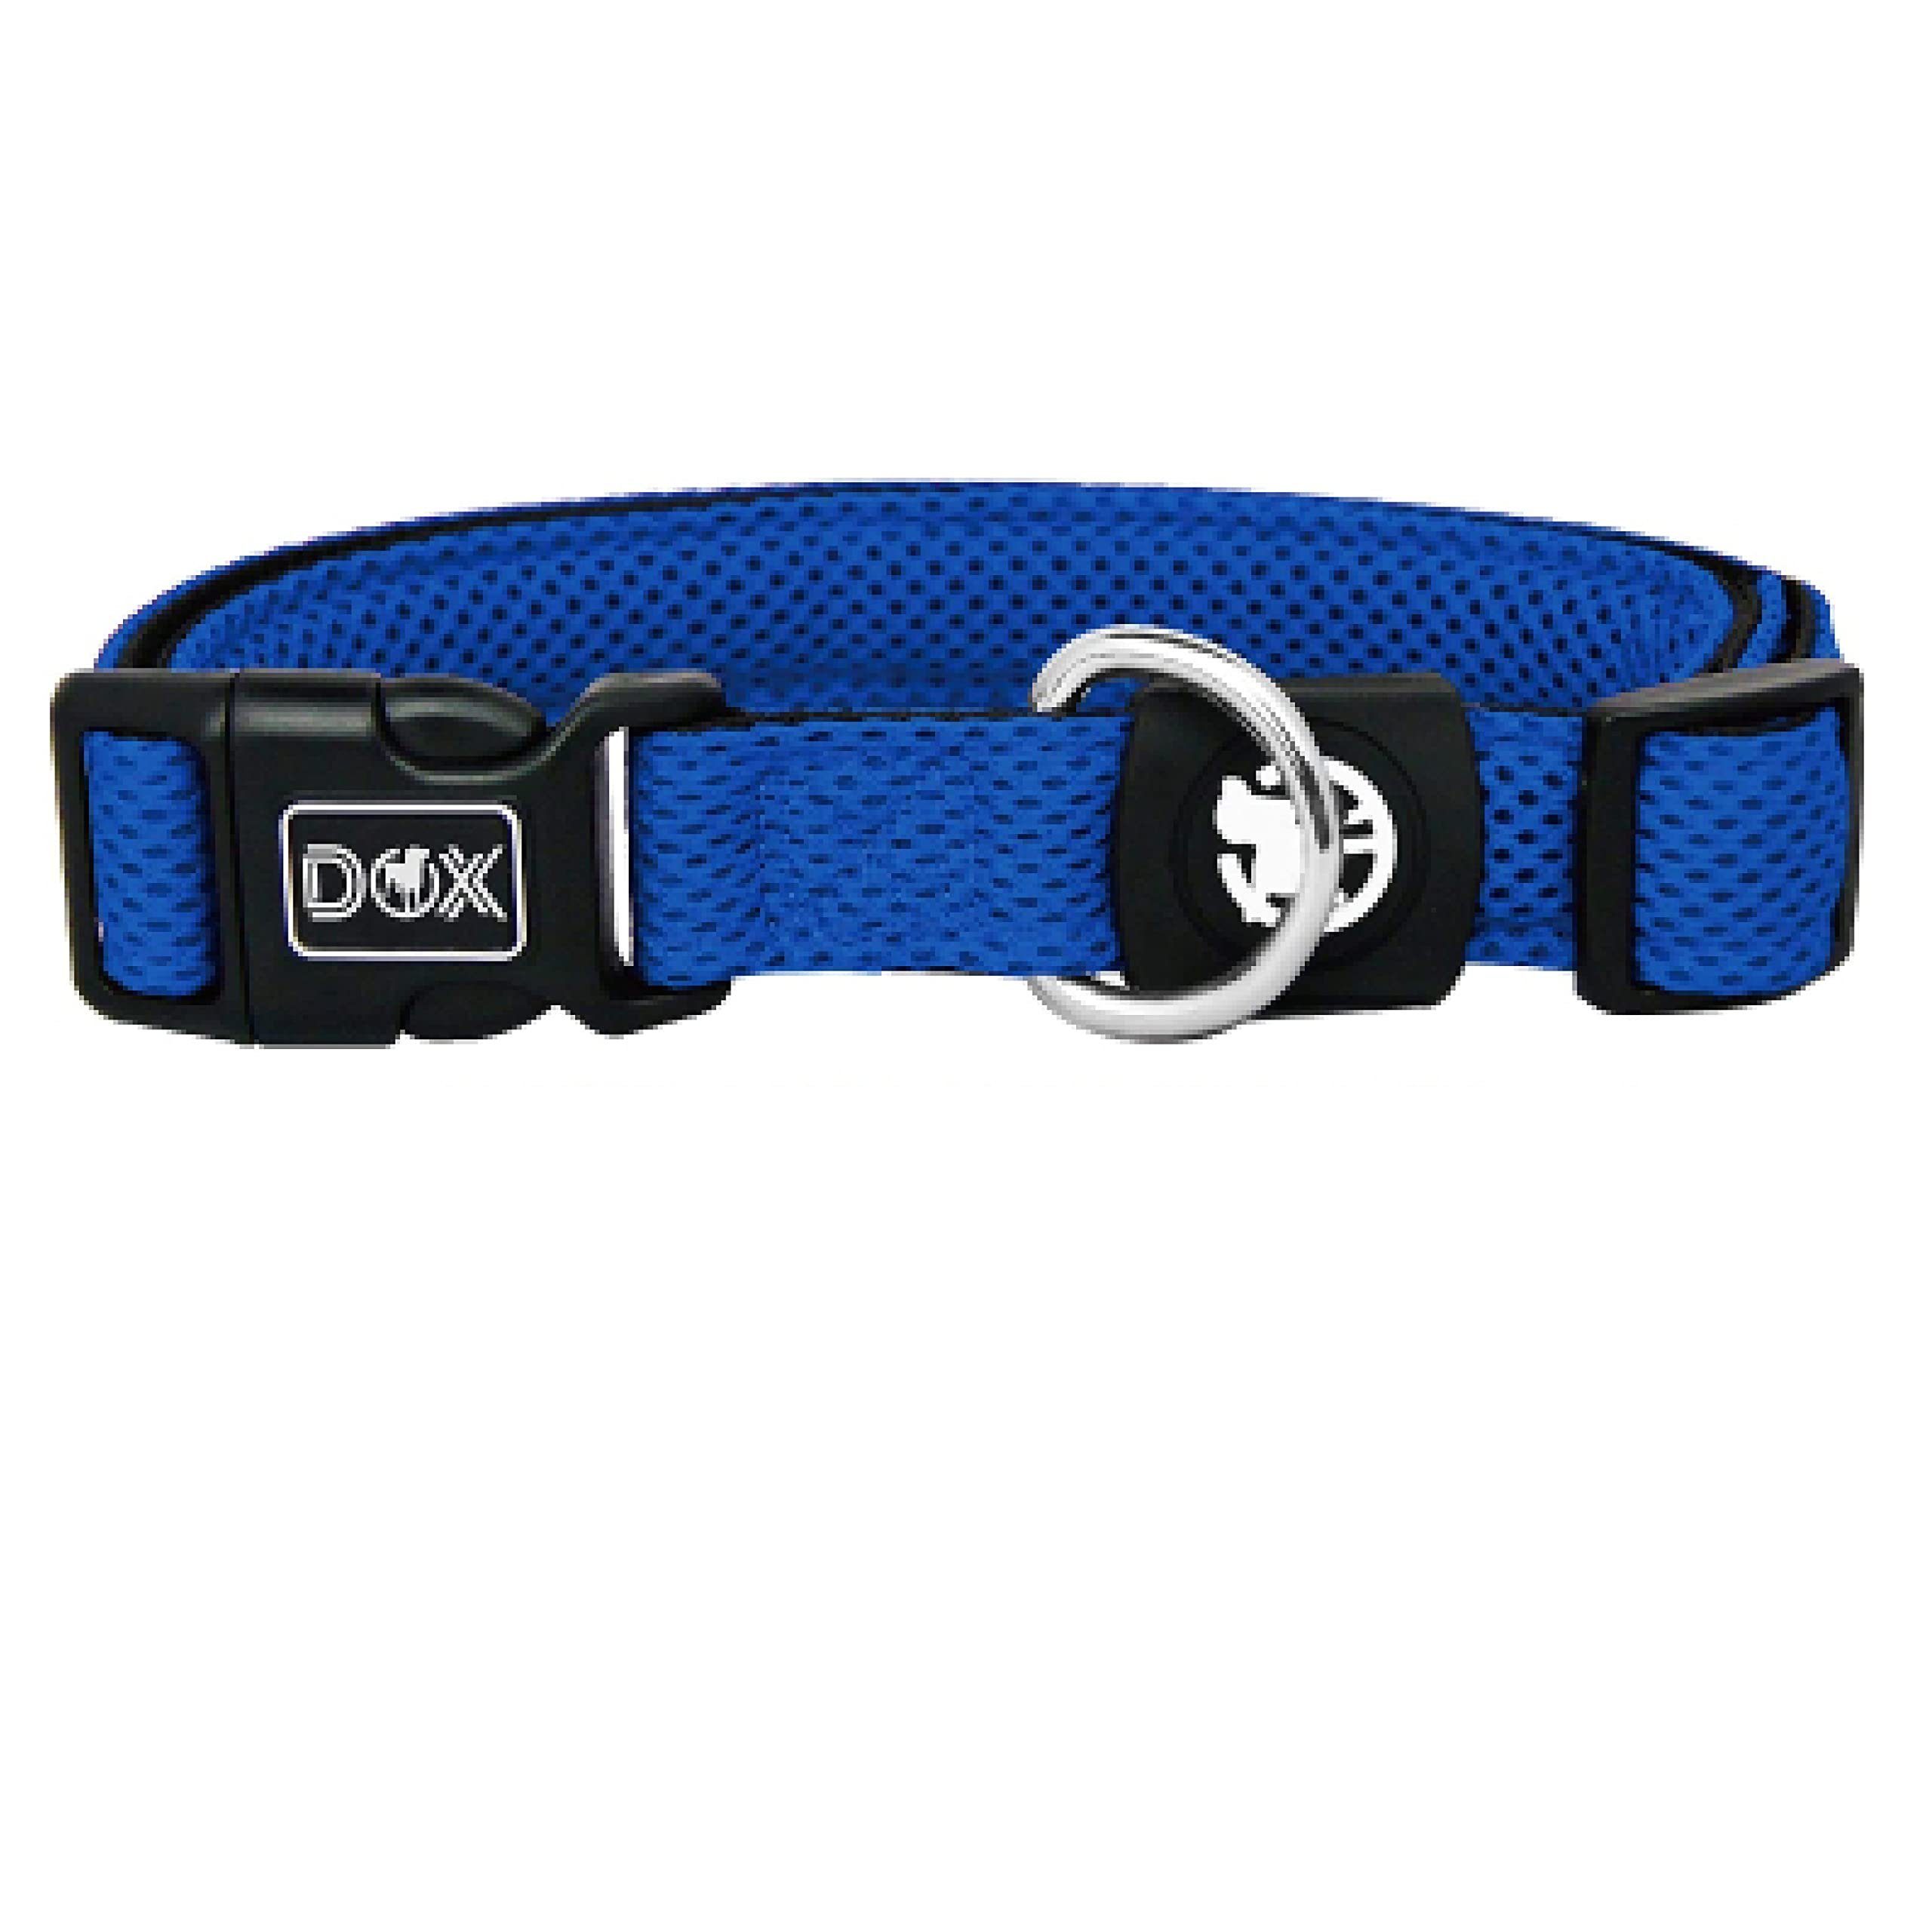 DDOXX Hunde-Geschirr Verstellbares Hundehalsband, gepolstert, Air Mesh, Blau Xs - 1,5 X 21-30 Cm Stoff